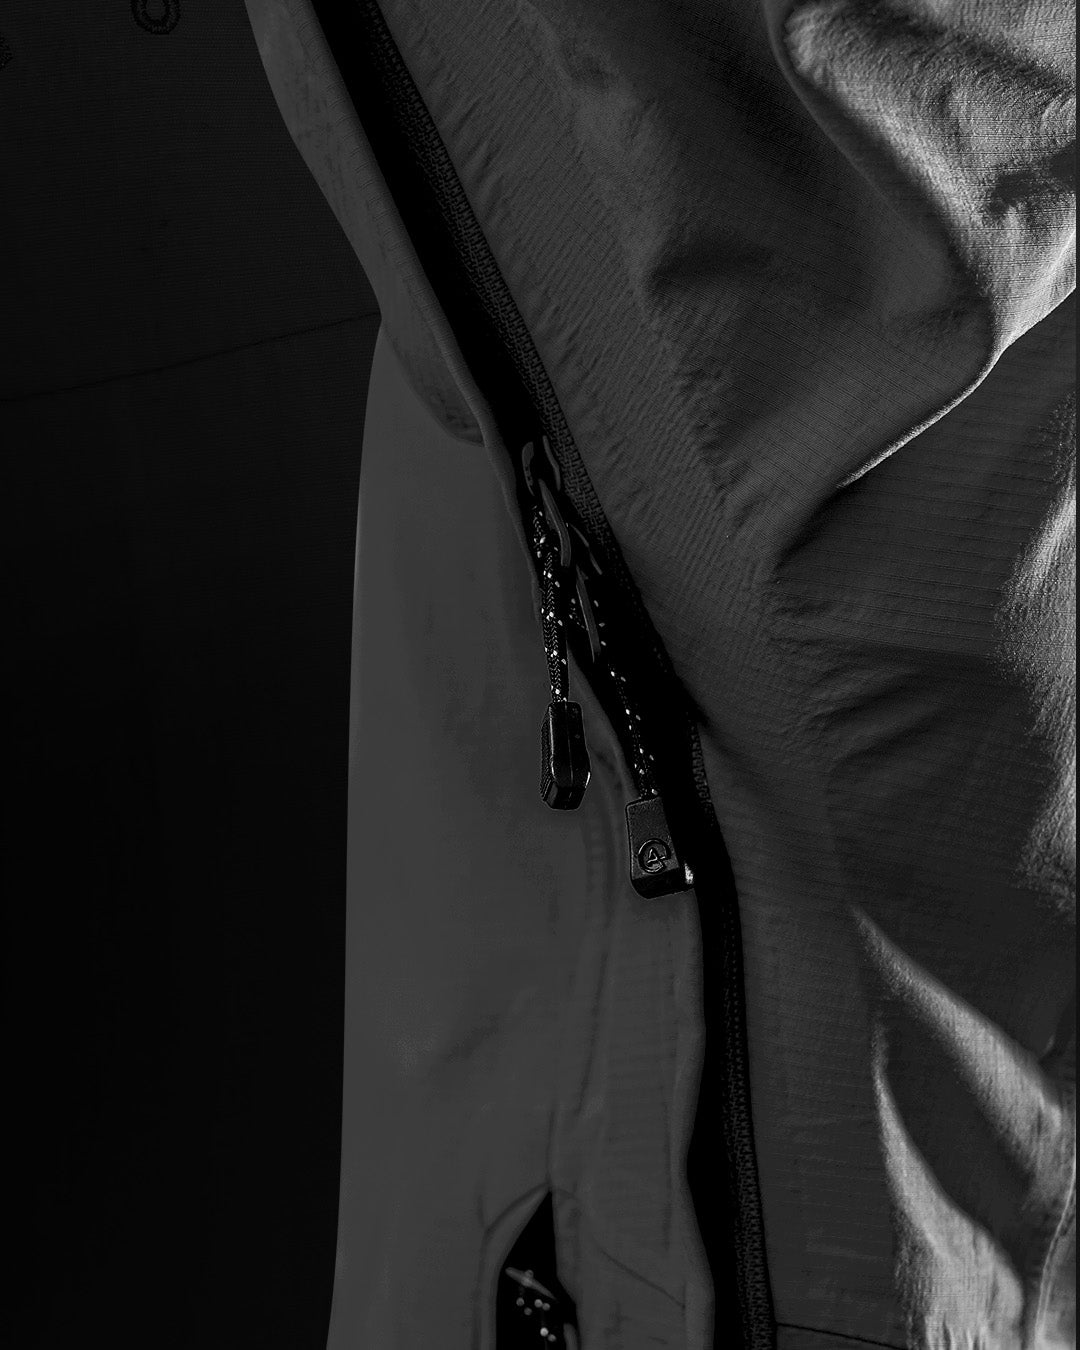 Billede af lynlås til udluftning under armen på matterhorn skaljakke